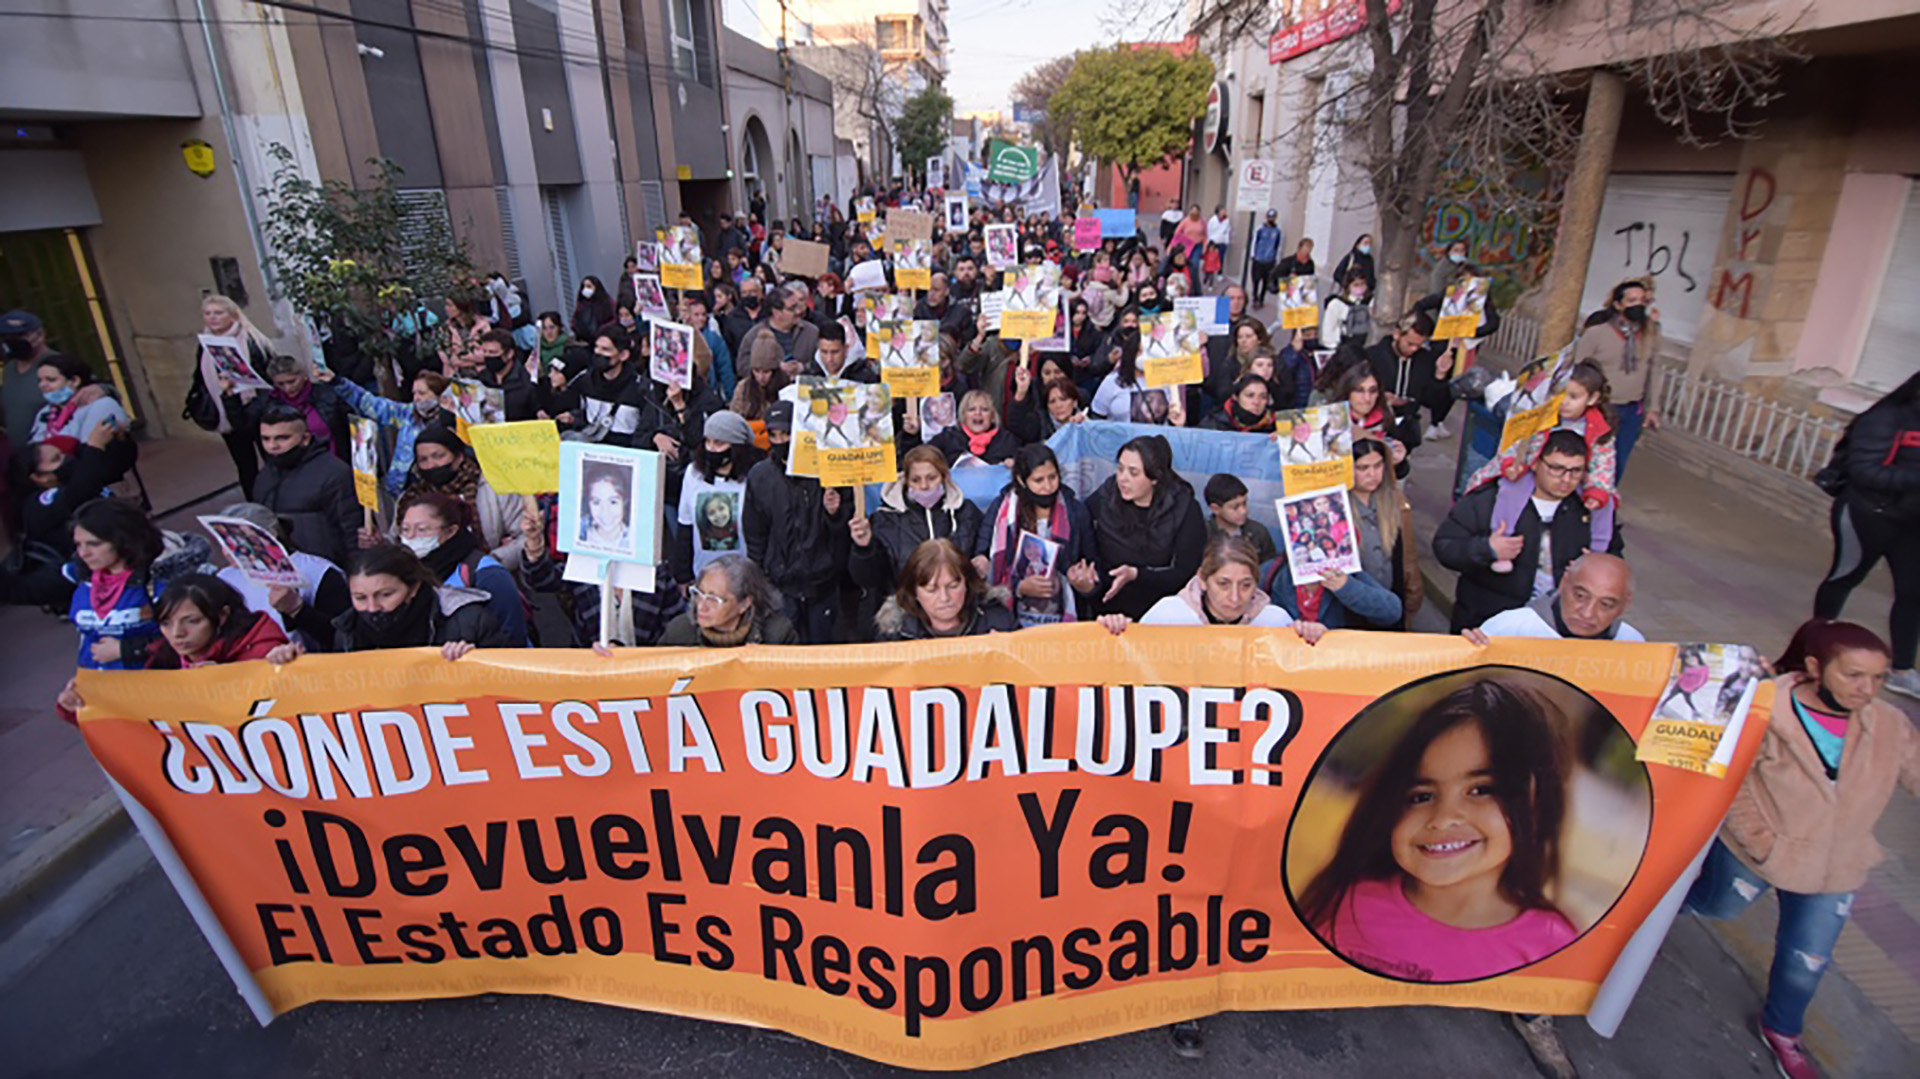 Durante el Encuentro, se visibilizó el caso de Guadalupe Lucero, la nena de 5 años que desapareció en junio del año pasado en esa provincia